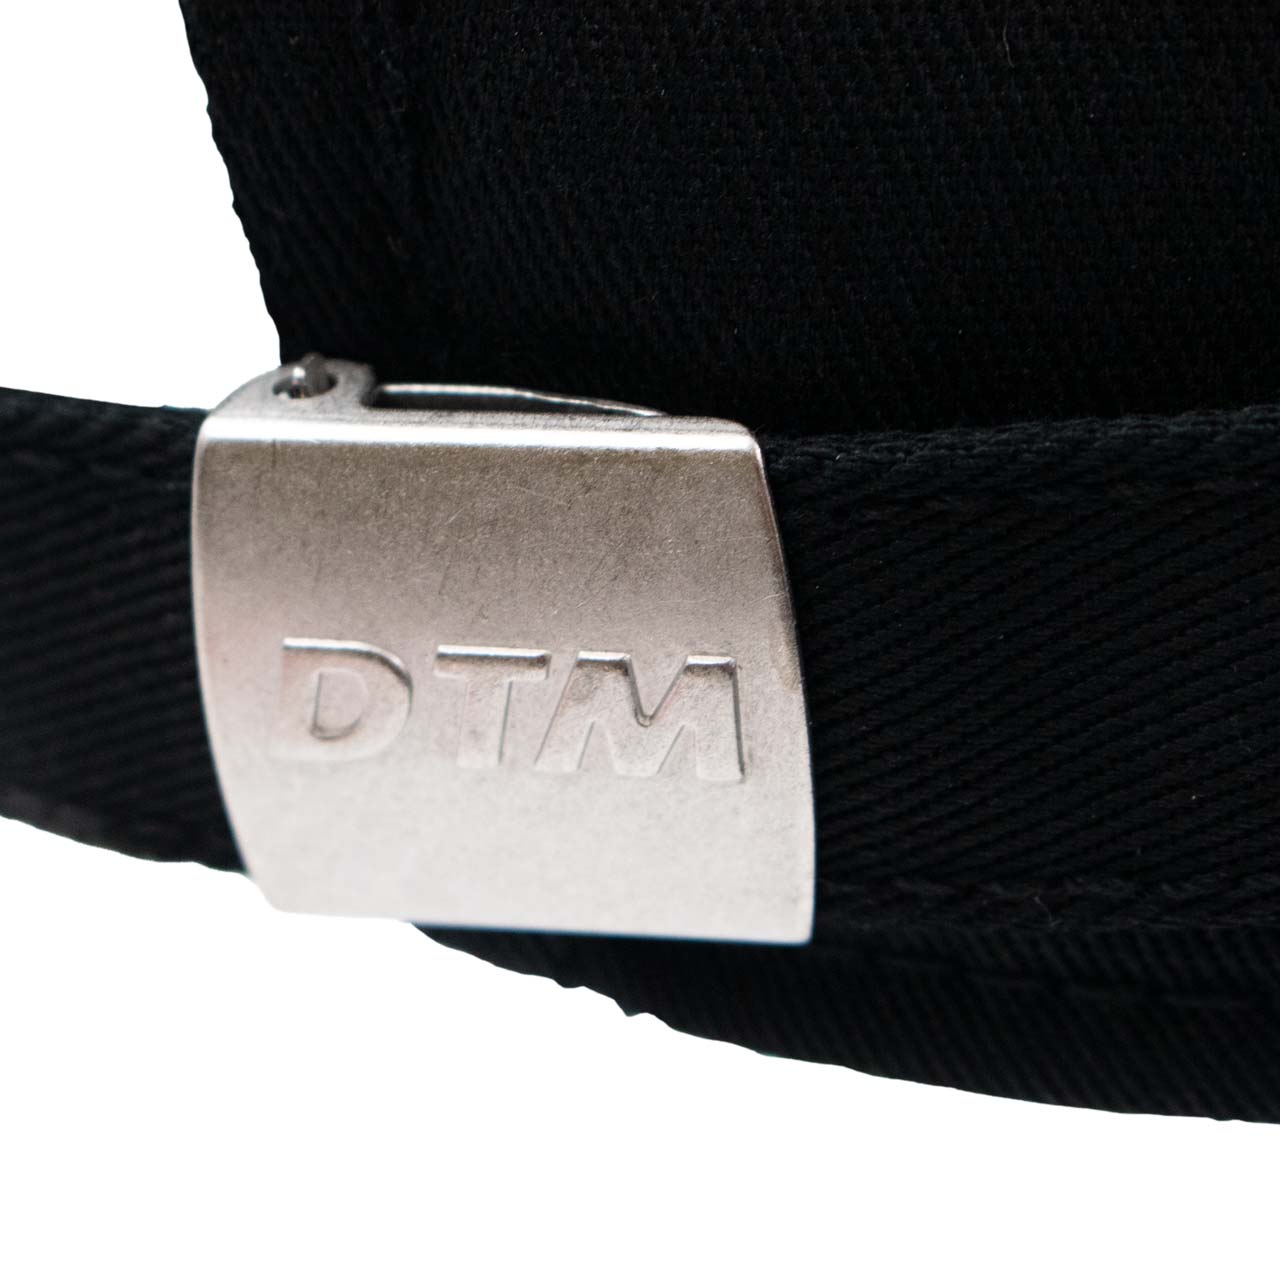 DTM ロゴ ベースボール キャップ ブラック / イエロー画像